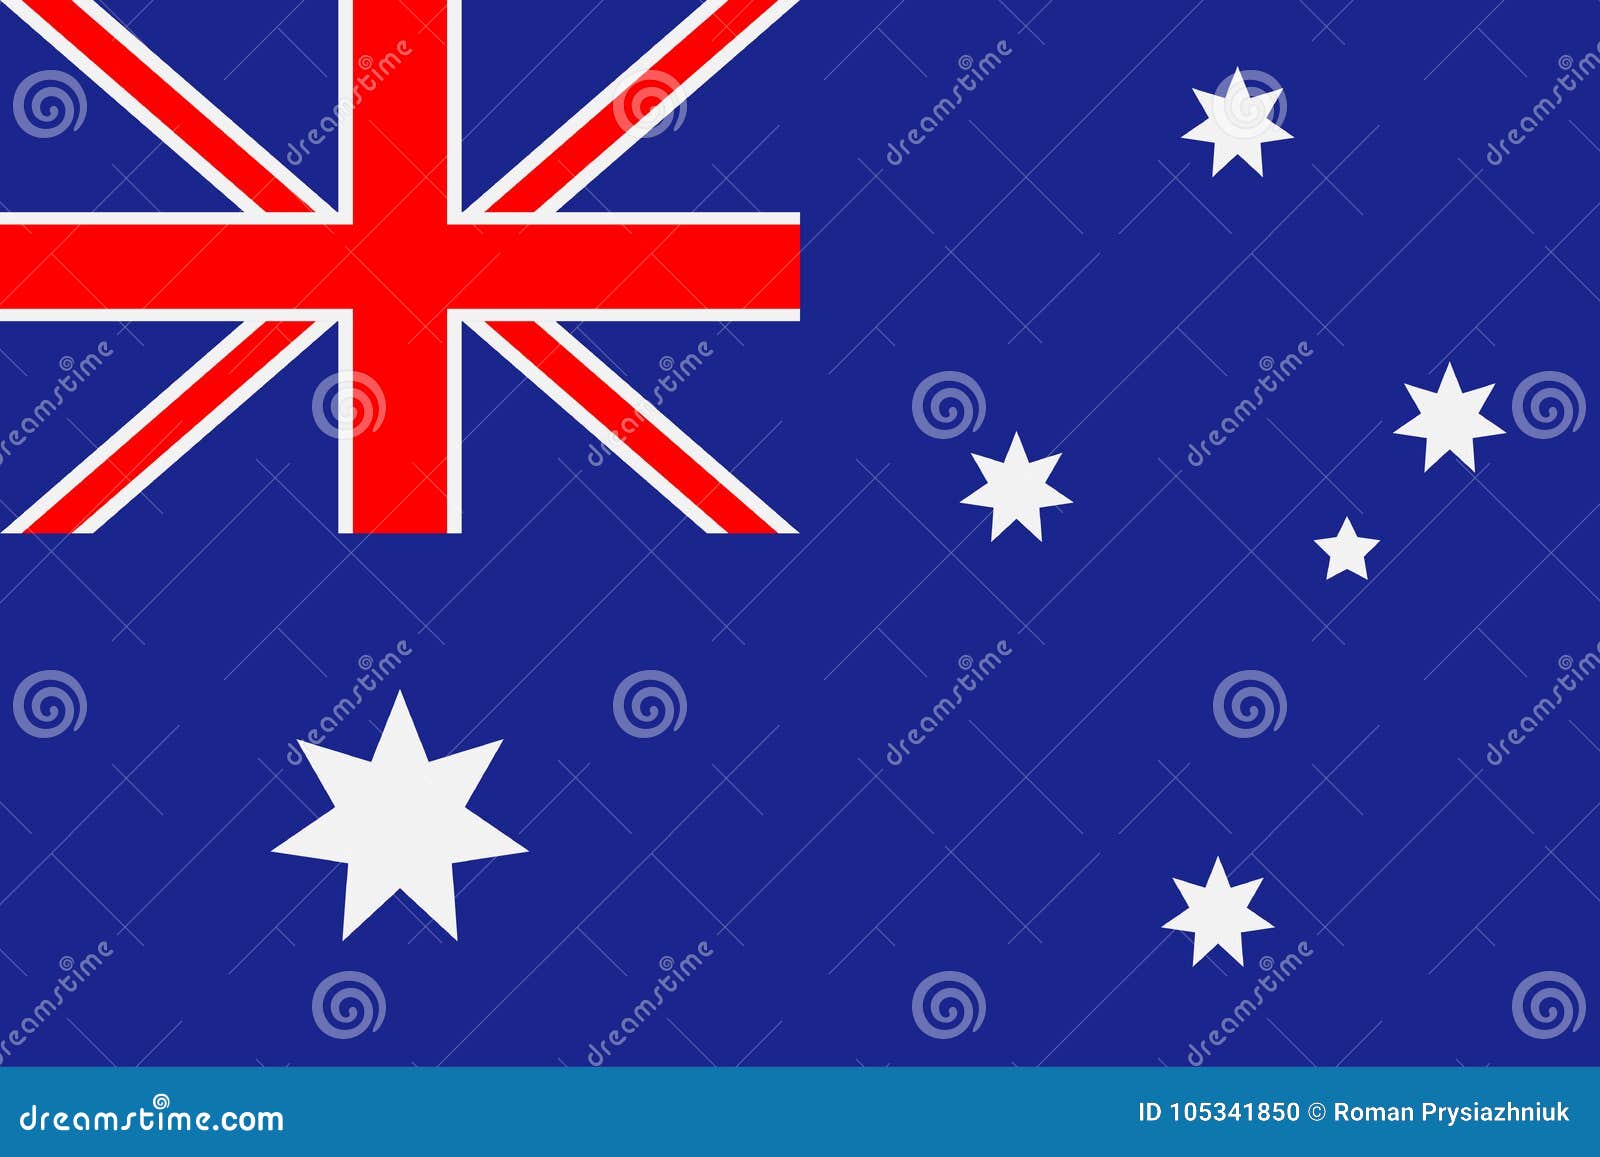 Quốc kỳ Australia: Vẻ đẹp tự nhiên và nền văn hóa đa dạng của Australia đã được thể hiện rõ ràng trong quốc kỳ của nước này. Hãy để ảnh về quốc kỳ Australia đưa bạn đến thiên đường đảo quốc này.